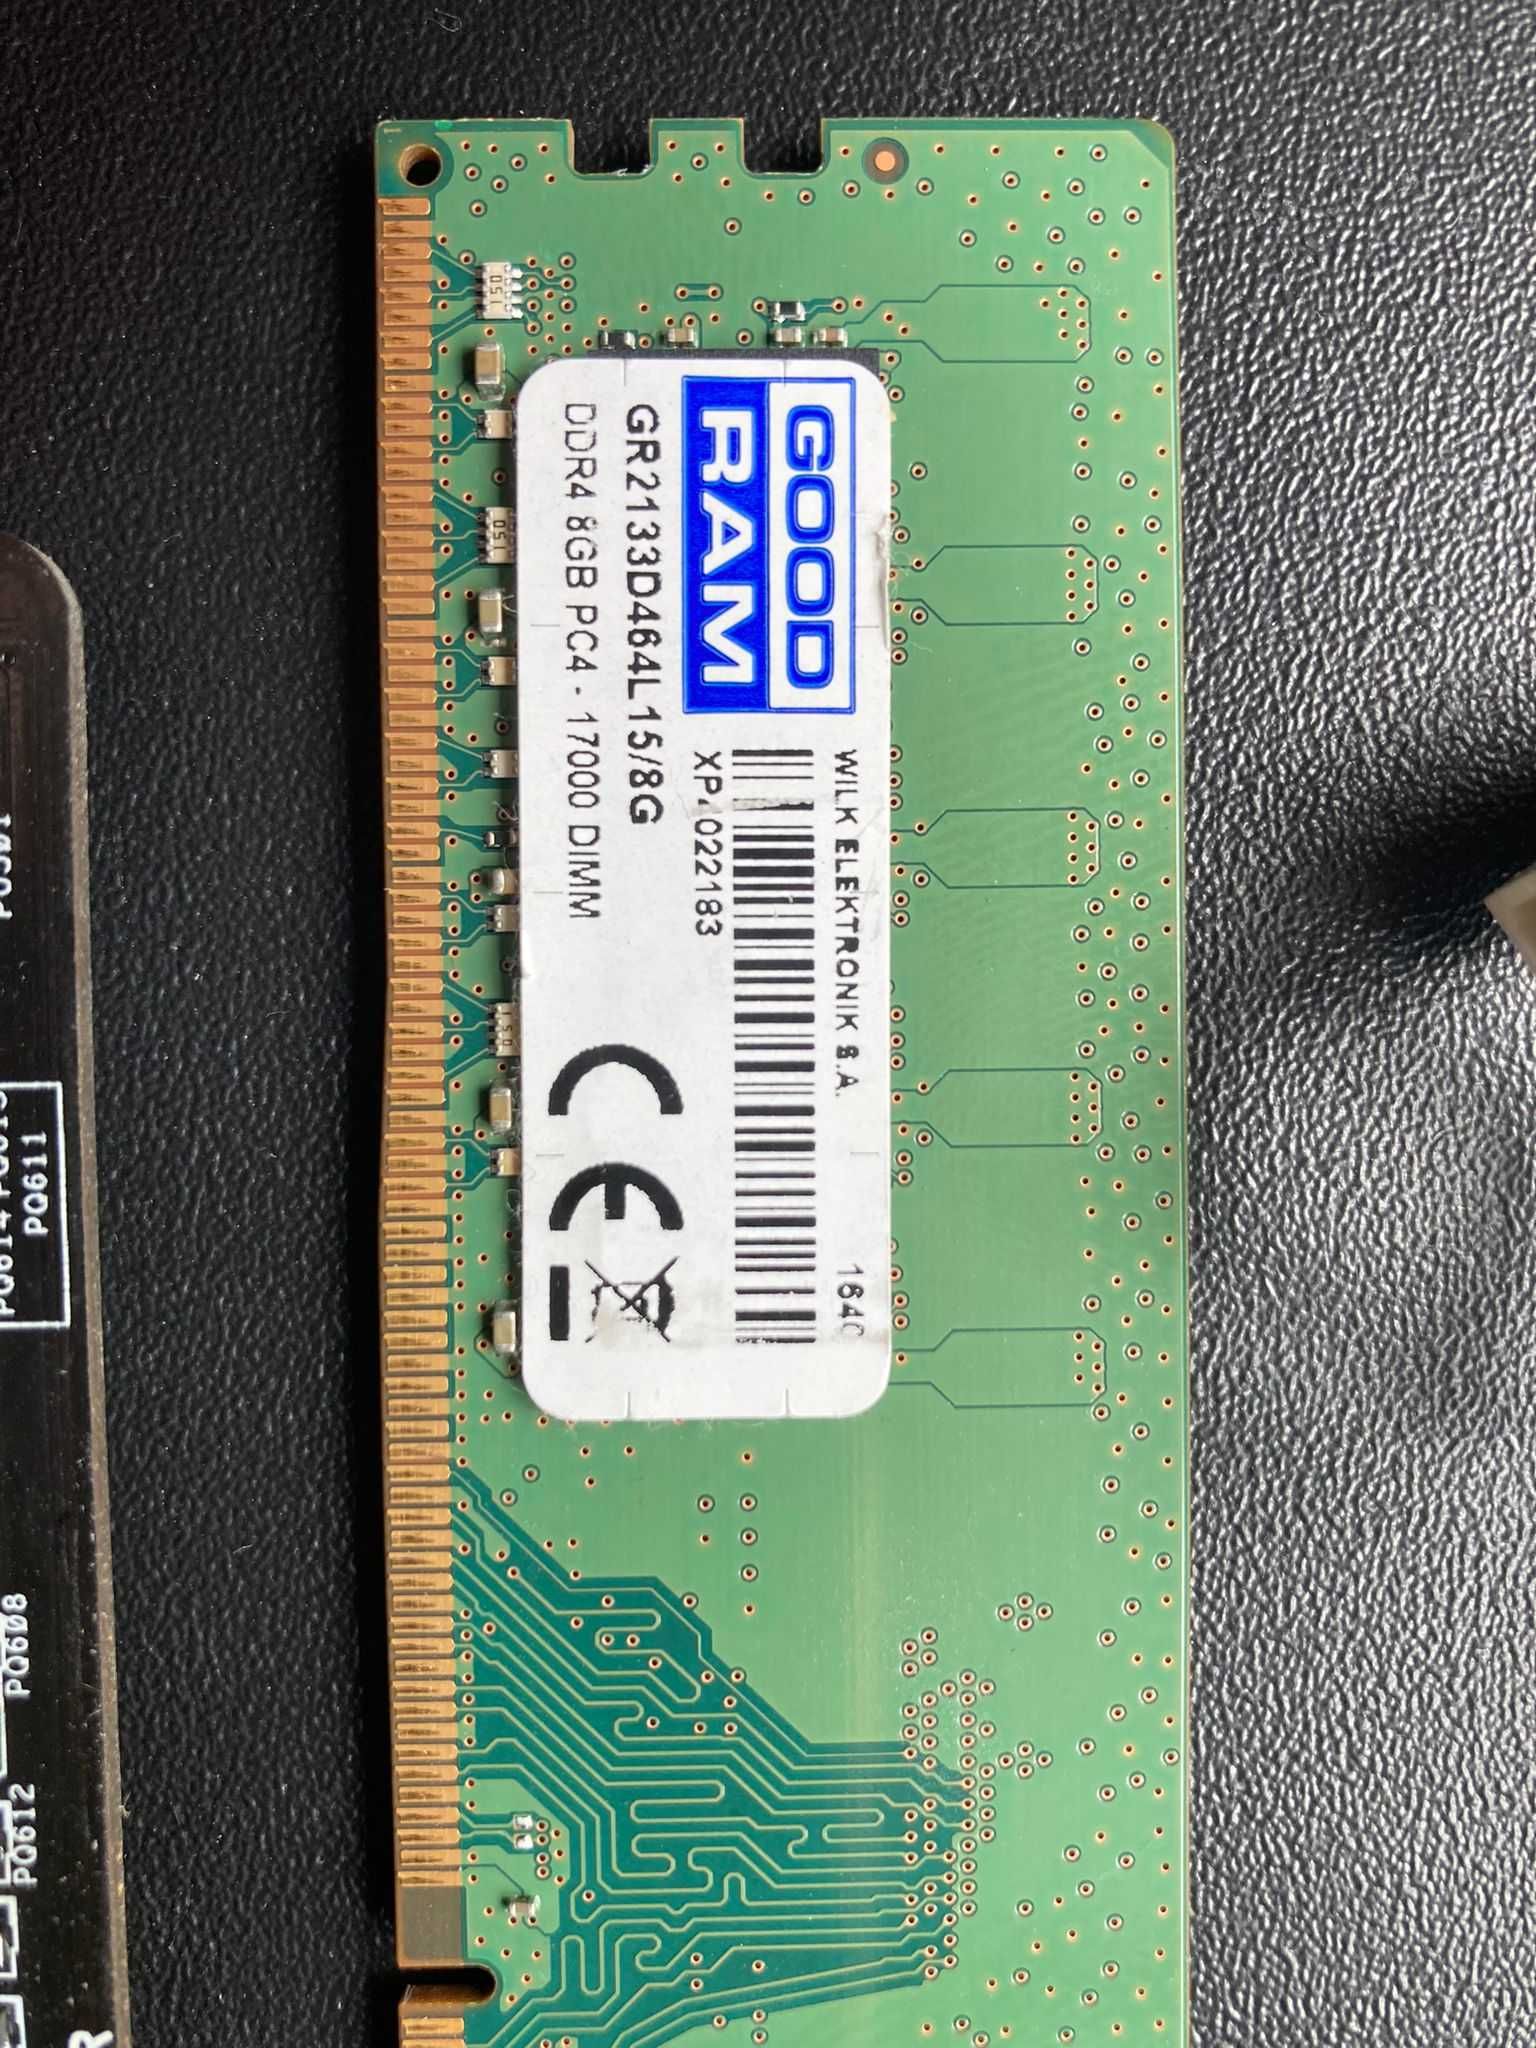 Procesor Intel core i5 7400, 3,50, 3.00, 4 Core + placa baza + bar8gb